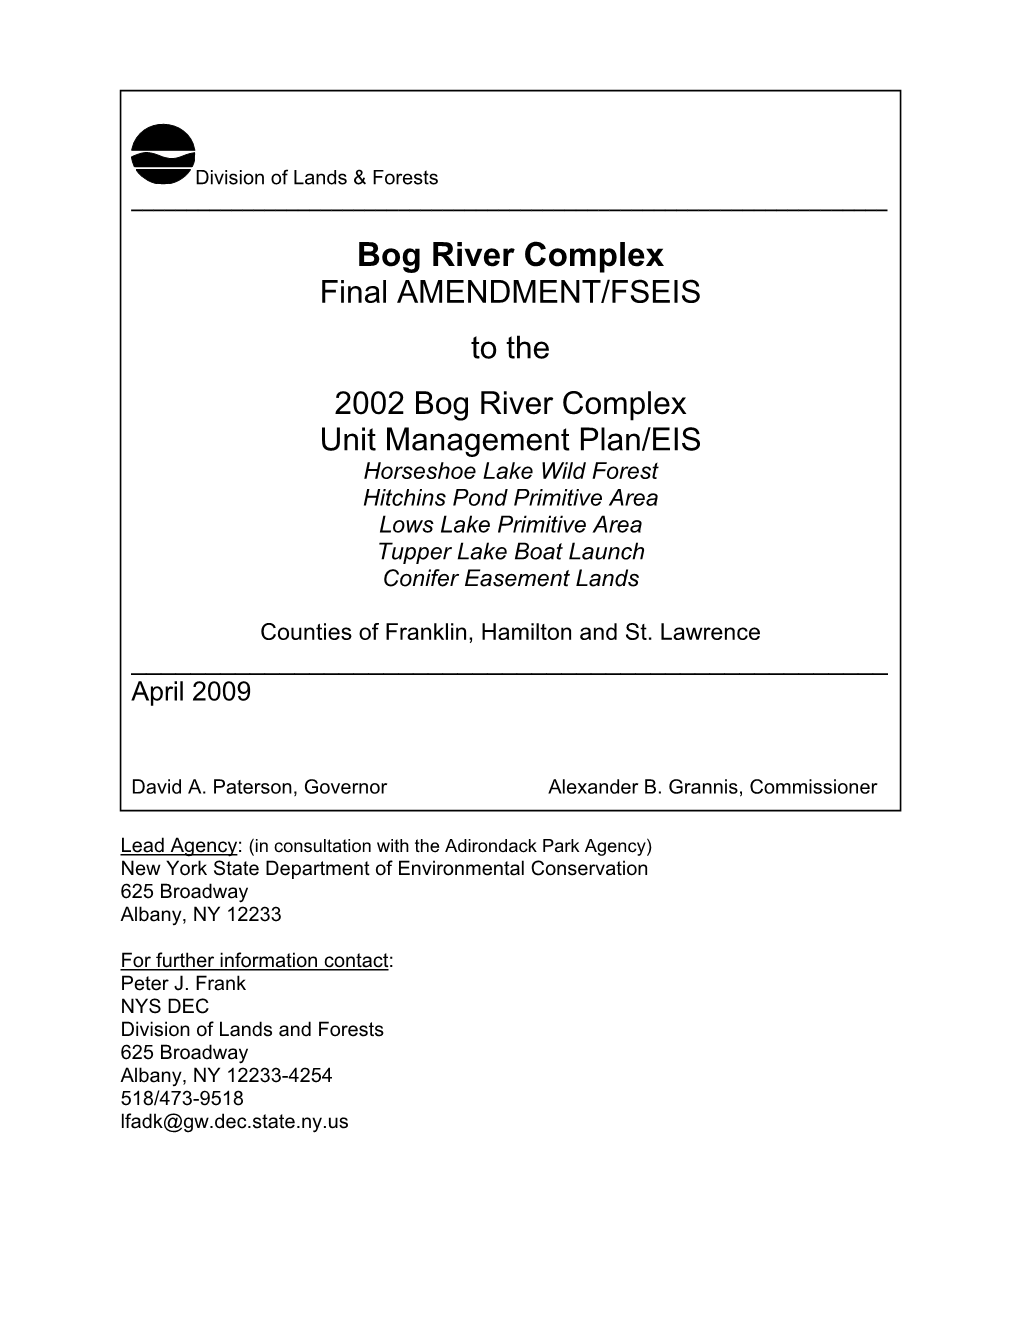 Bog River Unit Management Plan/EIS April 2009